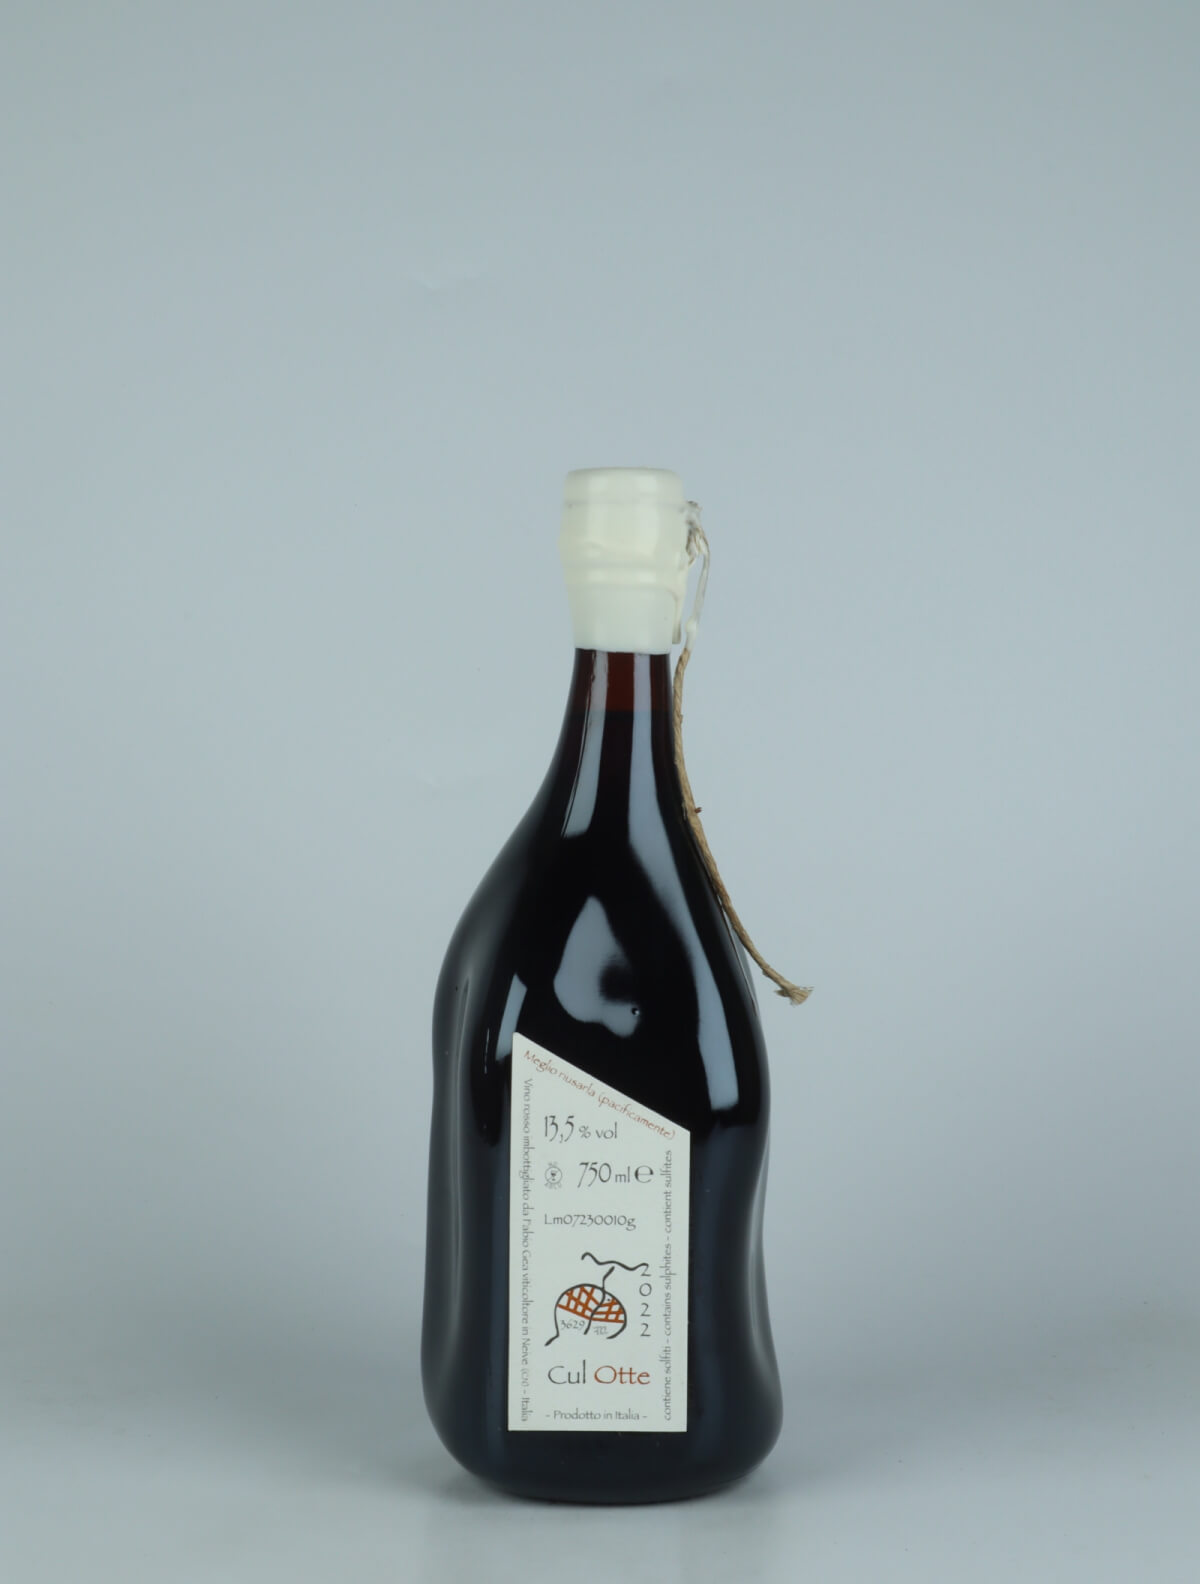 A bottle 2022 Cul Otte Red wine from Fabio Gea, Piedmont in Italy